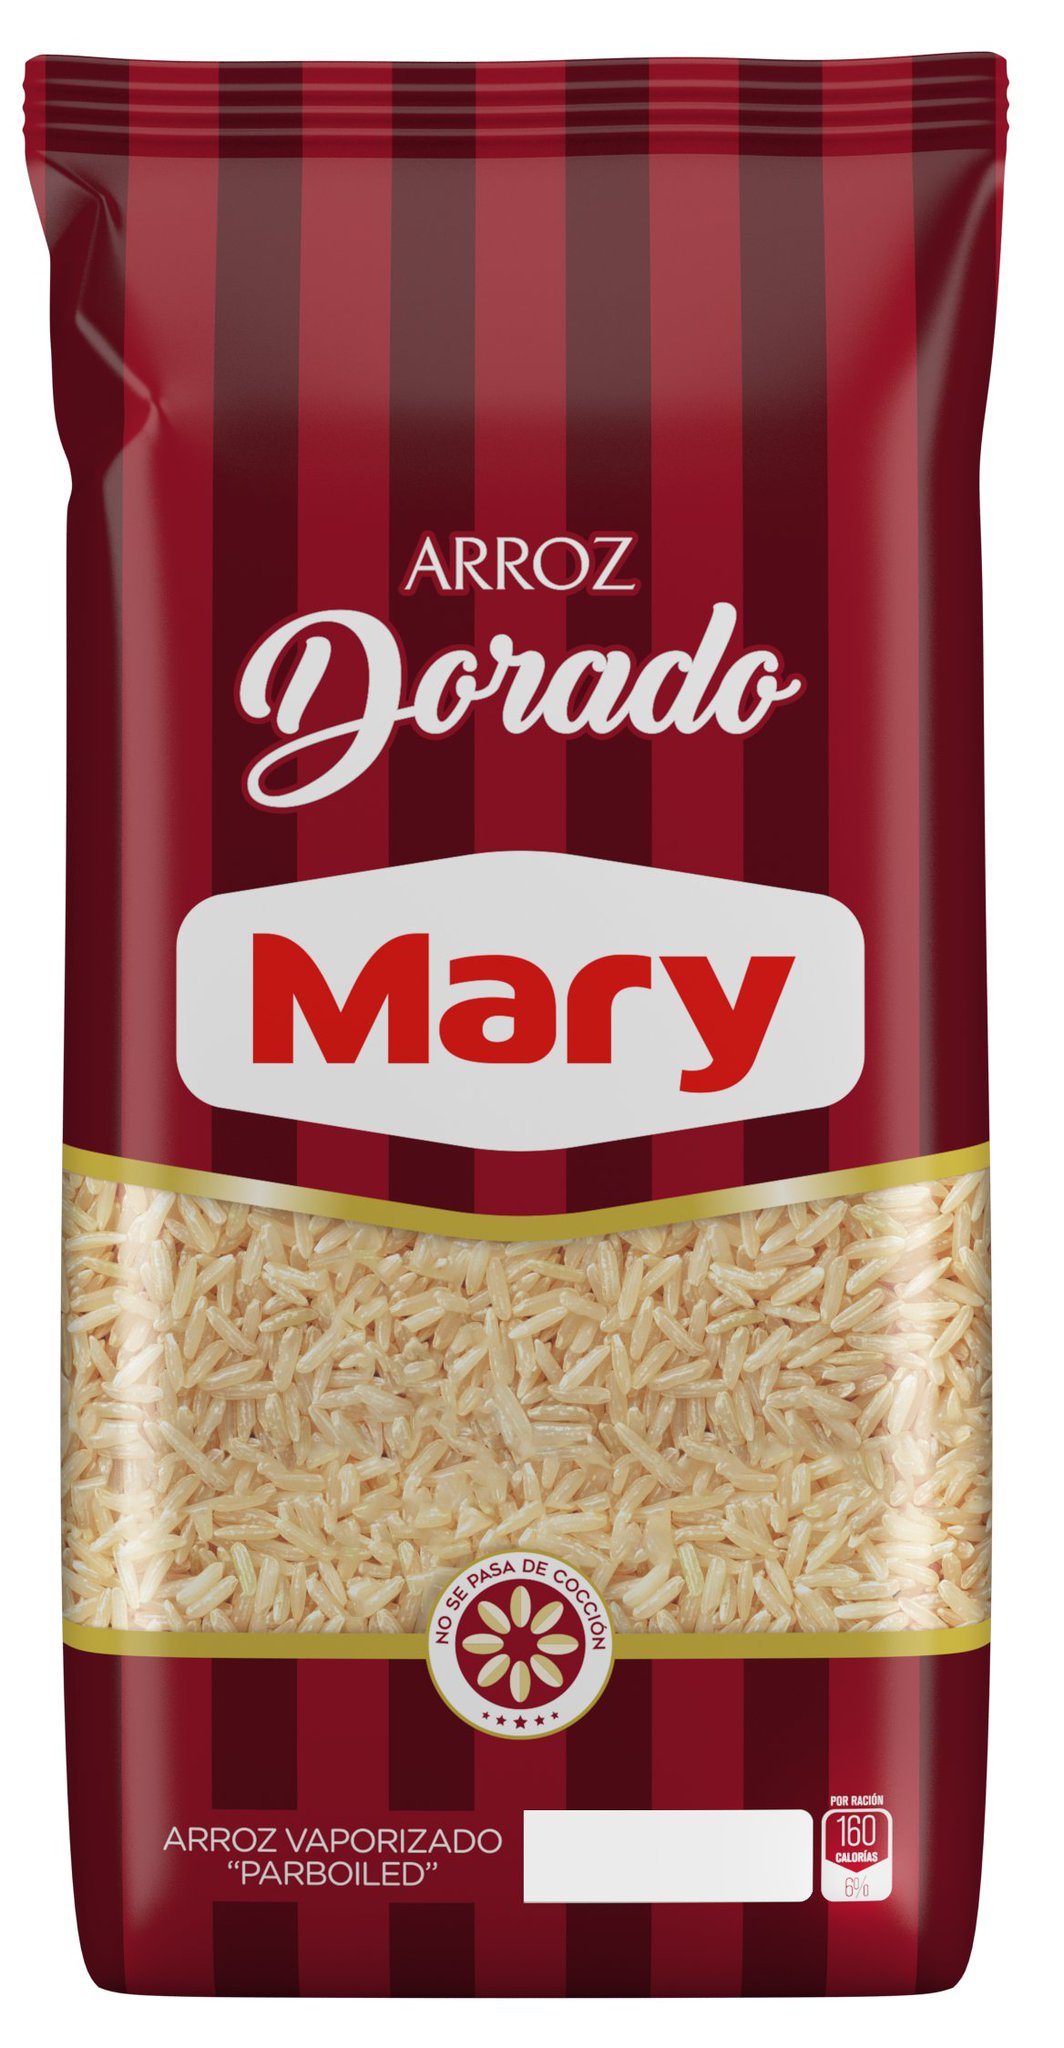 Polvorosas con crema de arroz - Alimentos Mary